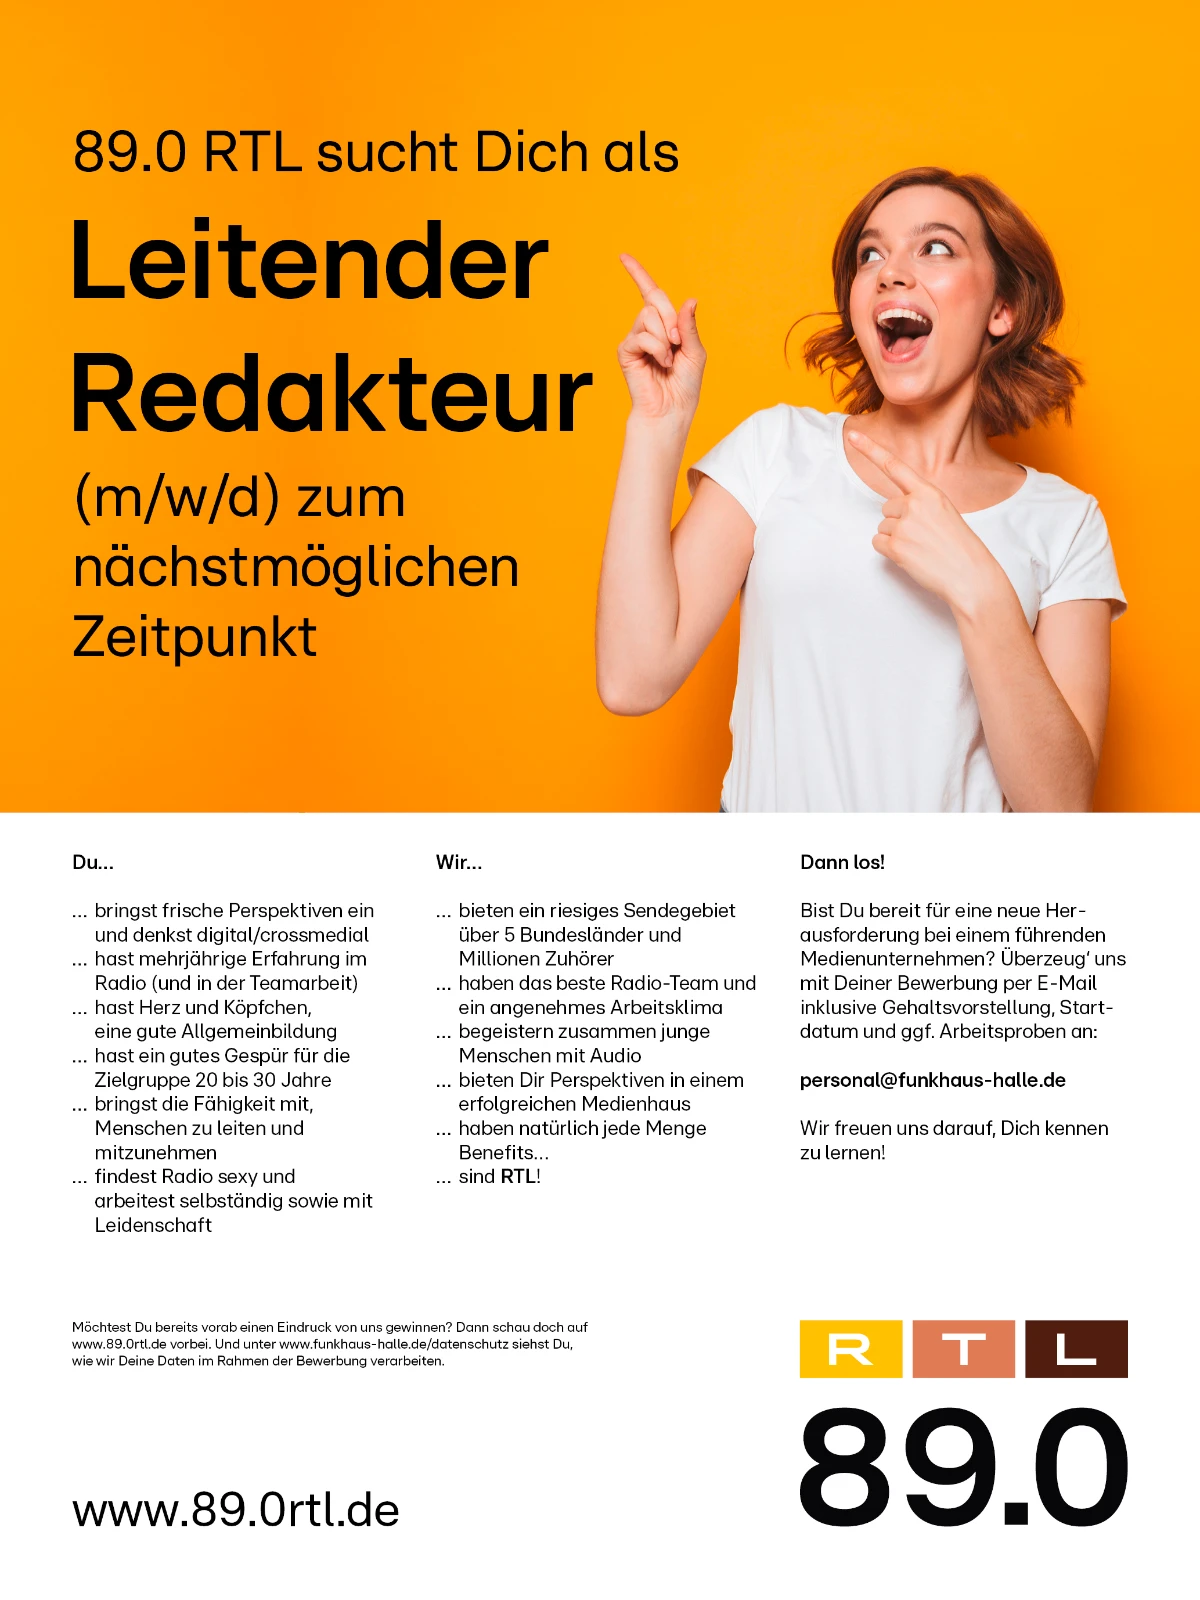 89.0 RTL sucht Dich als leitender Redakteur (m/w/d) zum nächstmöglichen Zeitpunkt.